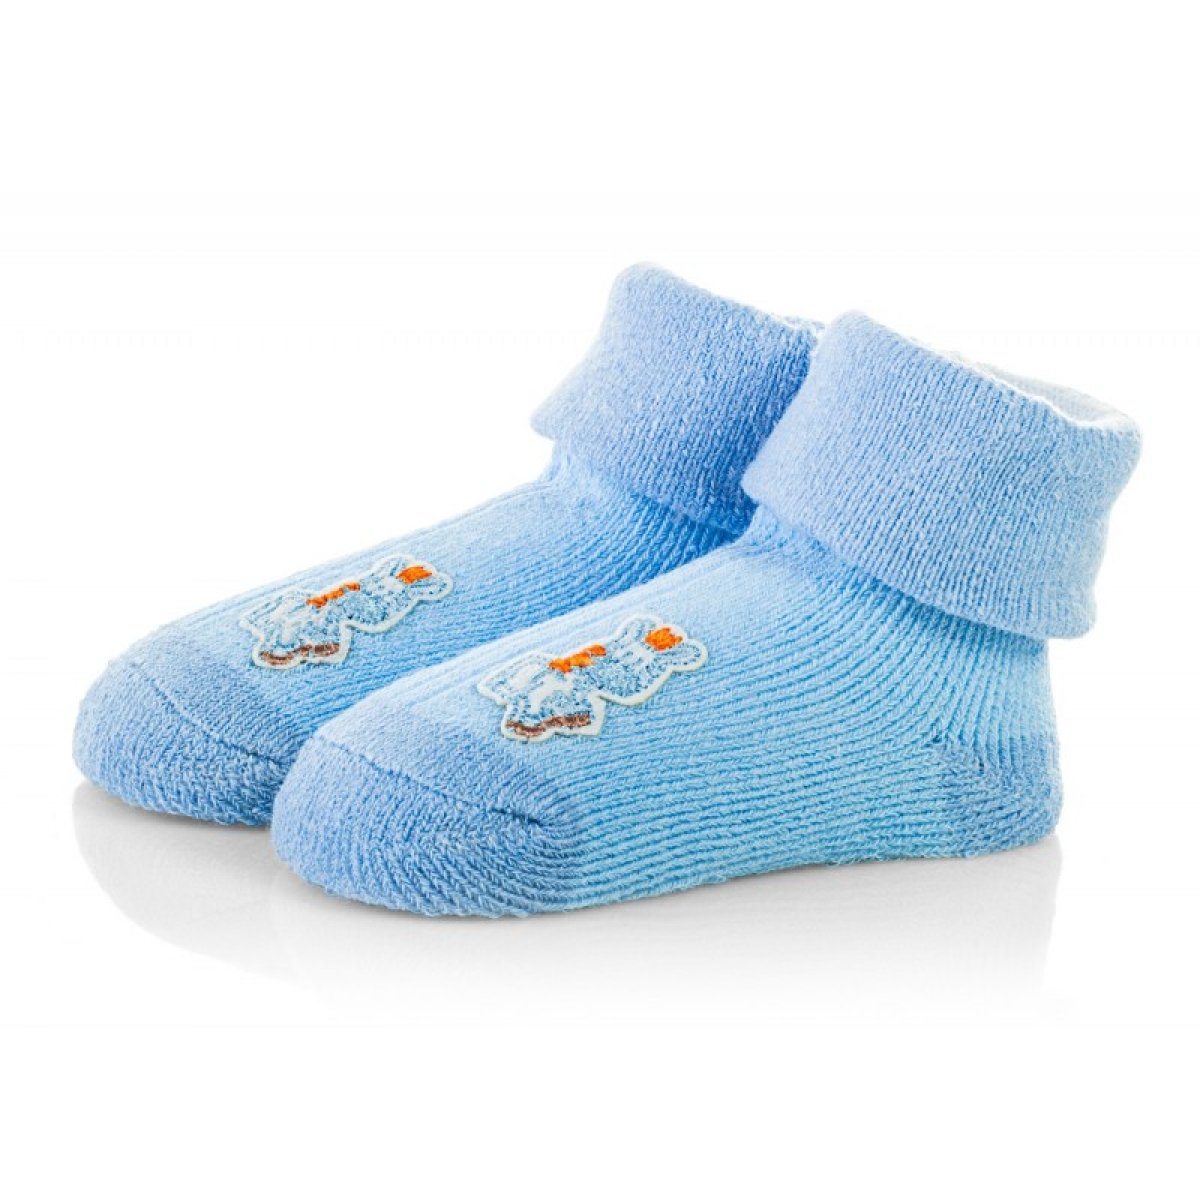 Kojenecké ponožky 0-6 měsíců - TBS046 - modrá